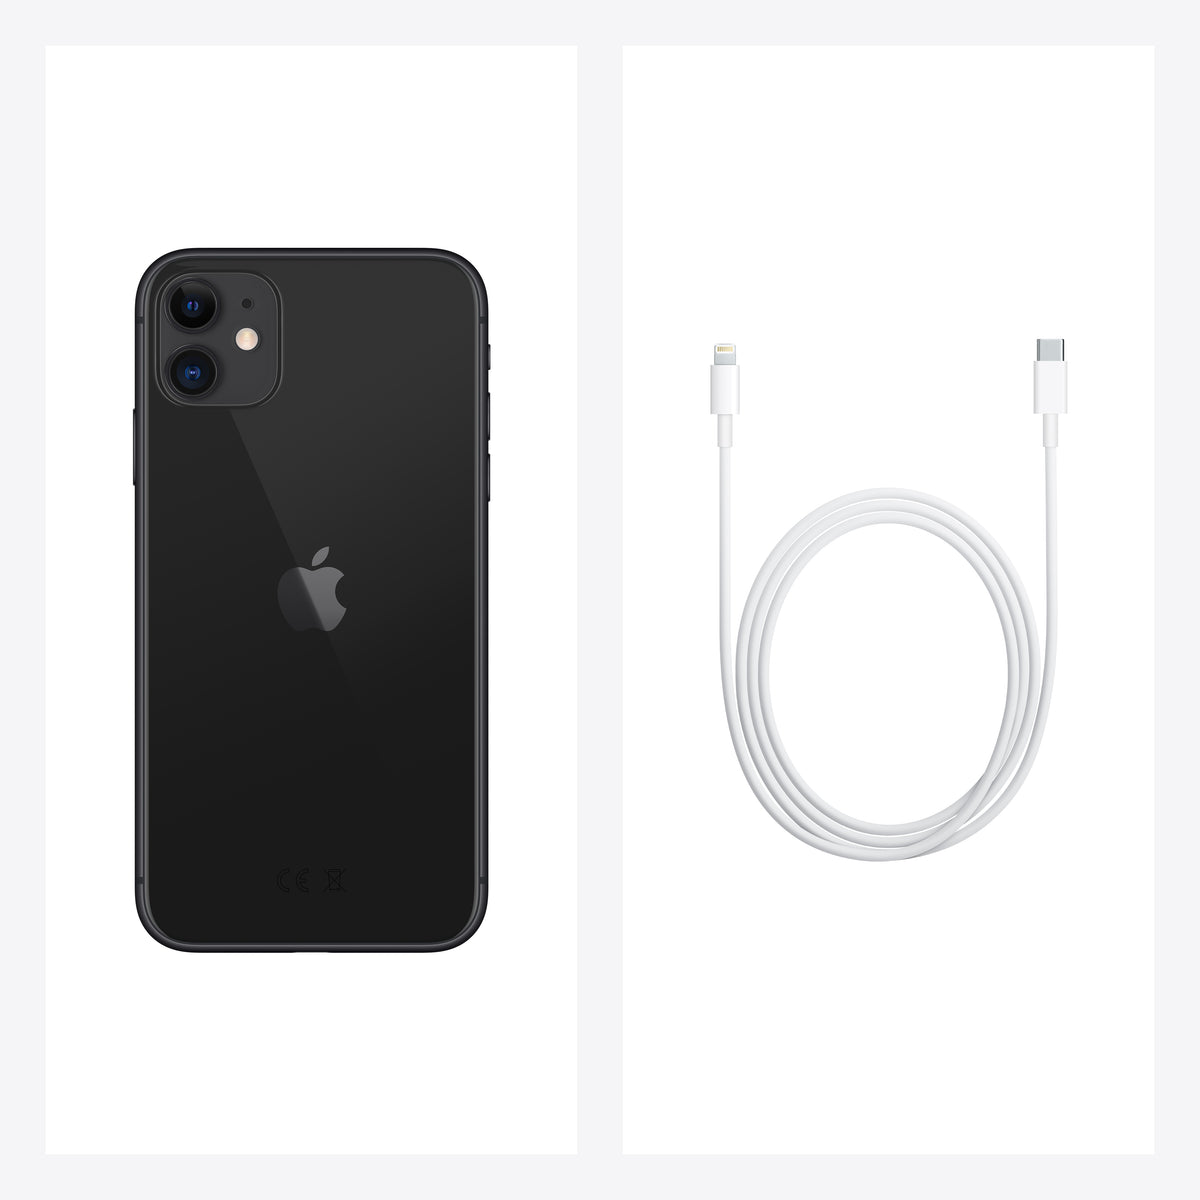 iPhone 11 128GB - Black